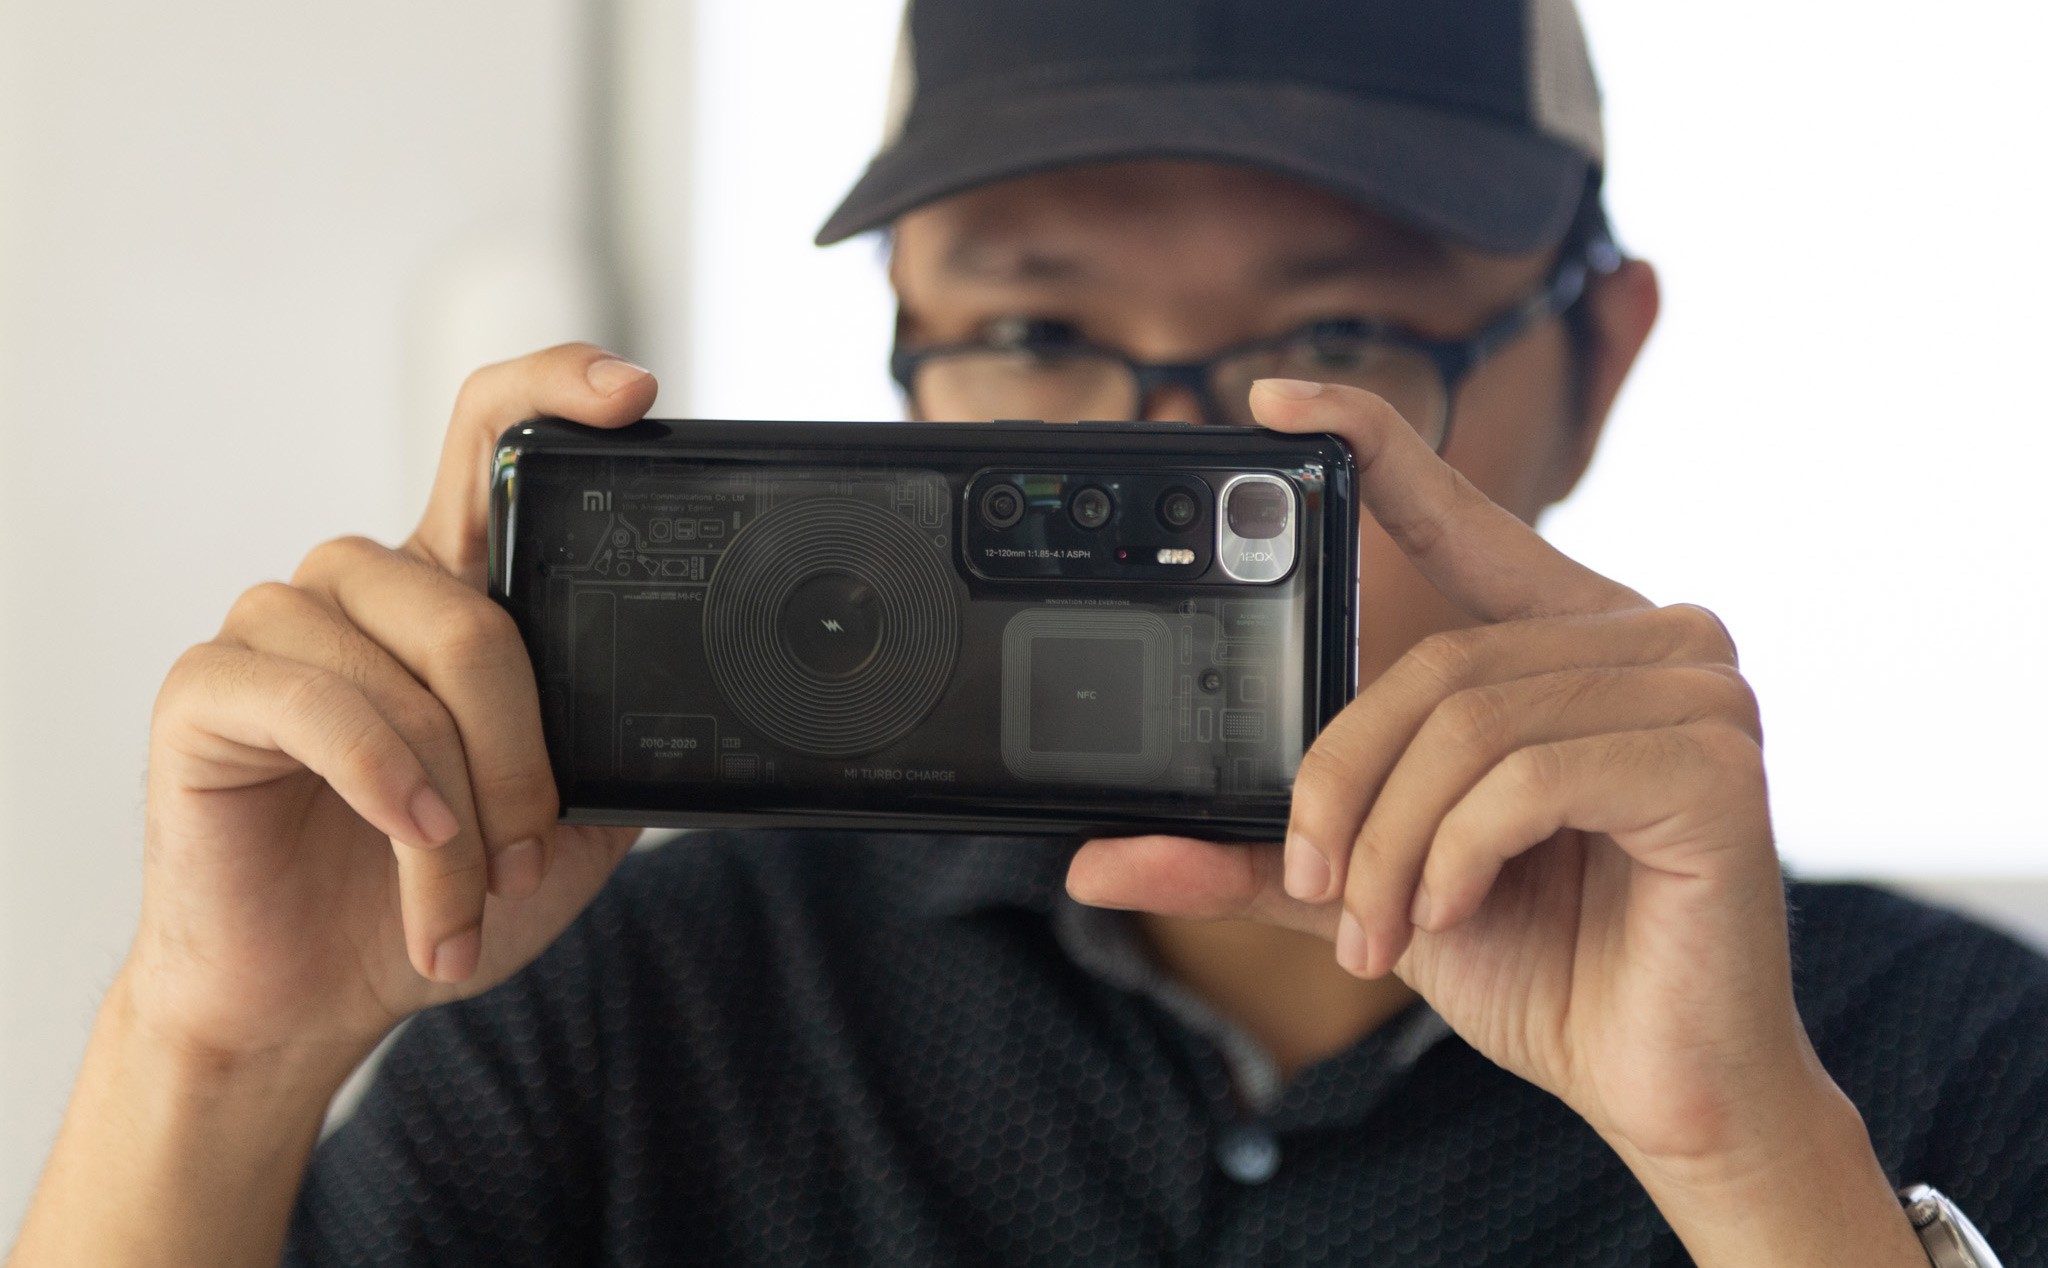 Xiaomi Mi 10 Ultra: Khám phá sức mạnh siêu phàm của chiếc điện thoại cao cấp Xiaomi Mi 10 Ultra với màn hình tuyệt đẹp và camera chụp ảnh vượt trội. Xem ngay hình ảnh chi tiết để trải nghiệm cảm giác thực tế nhất.